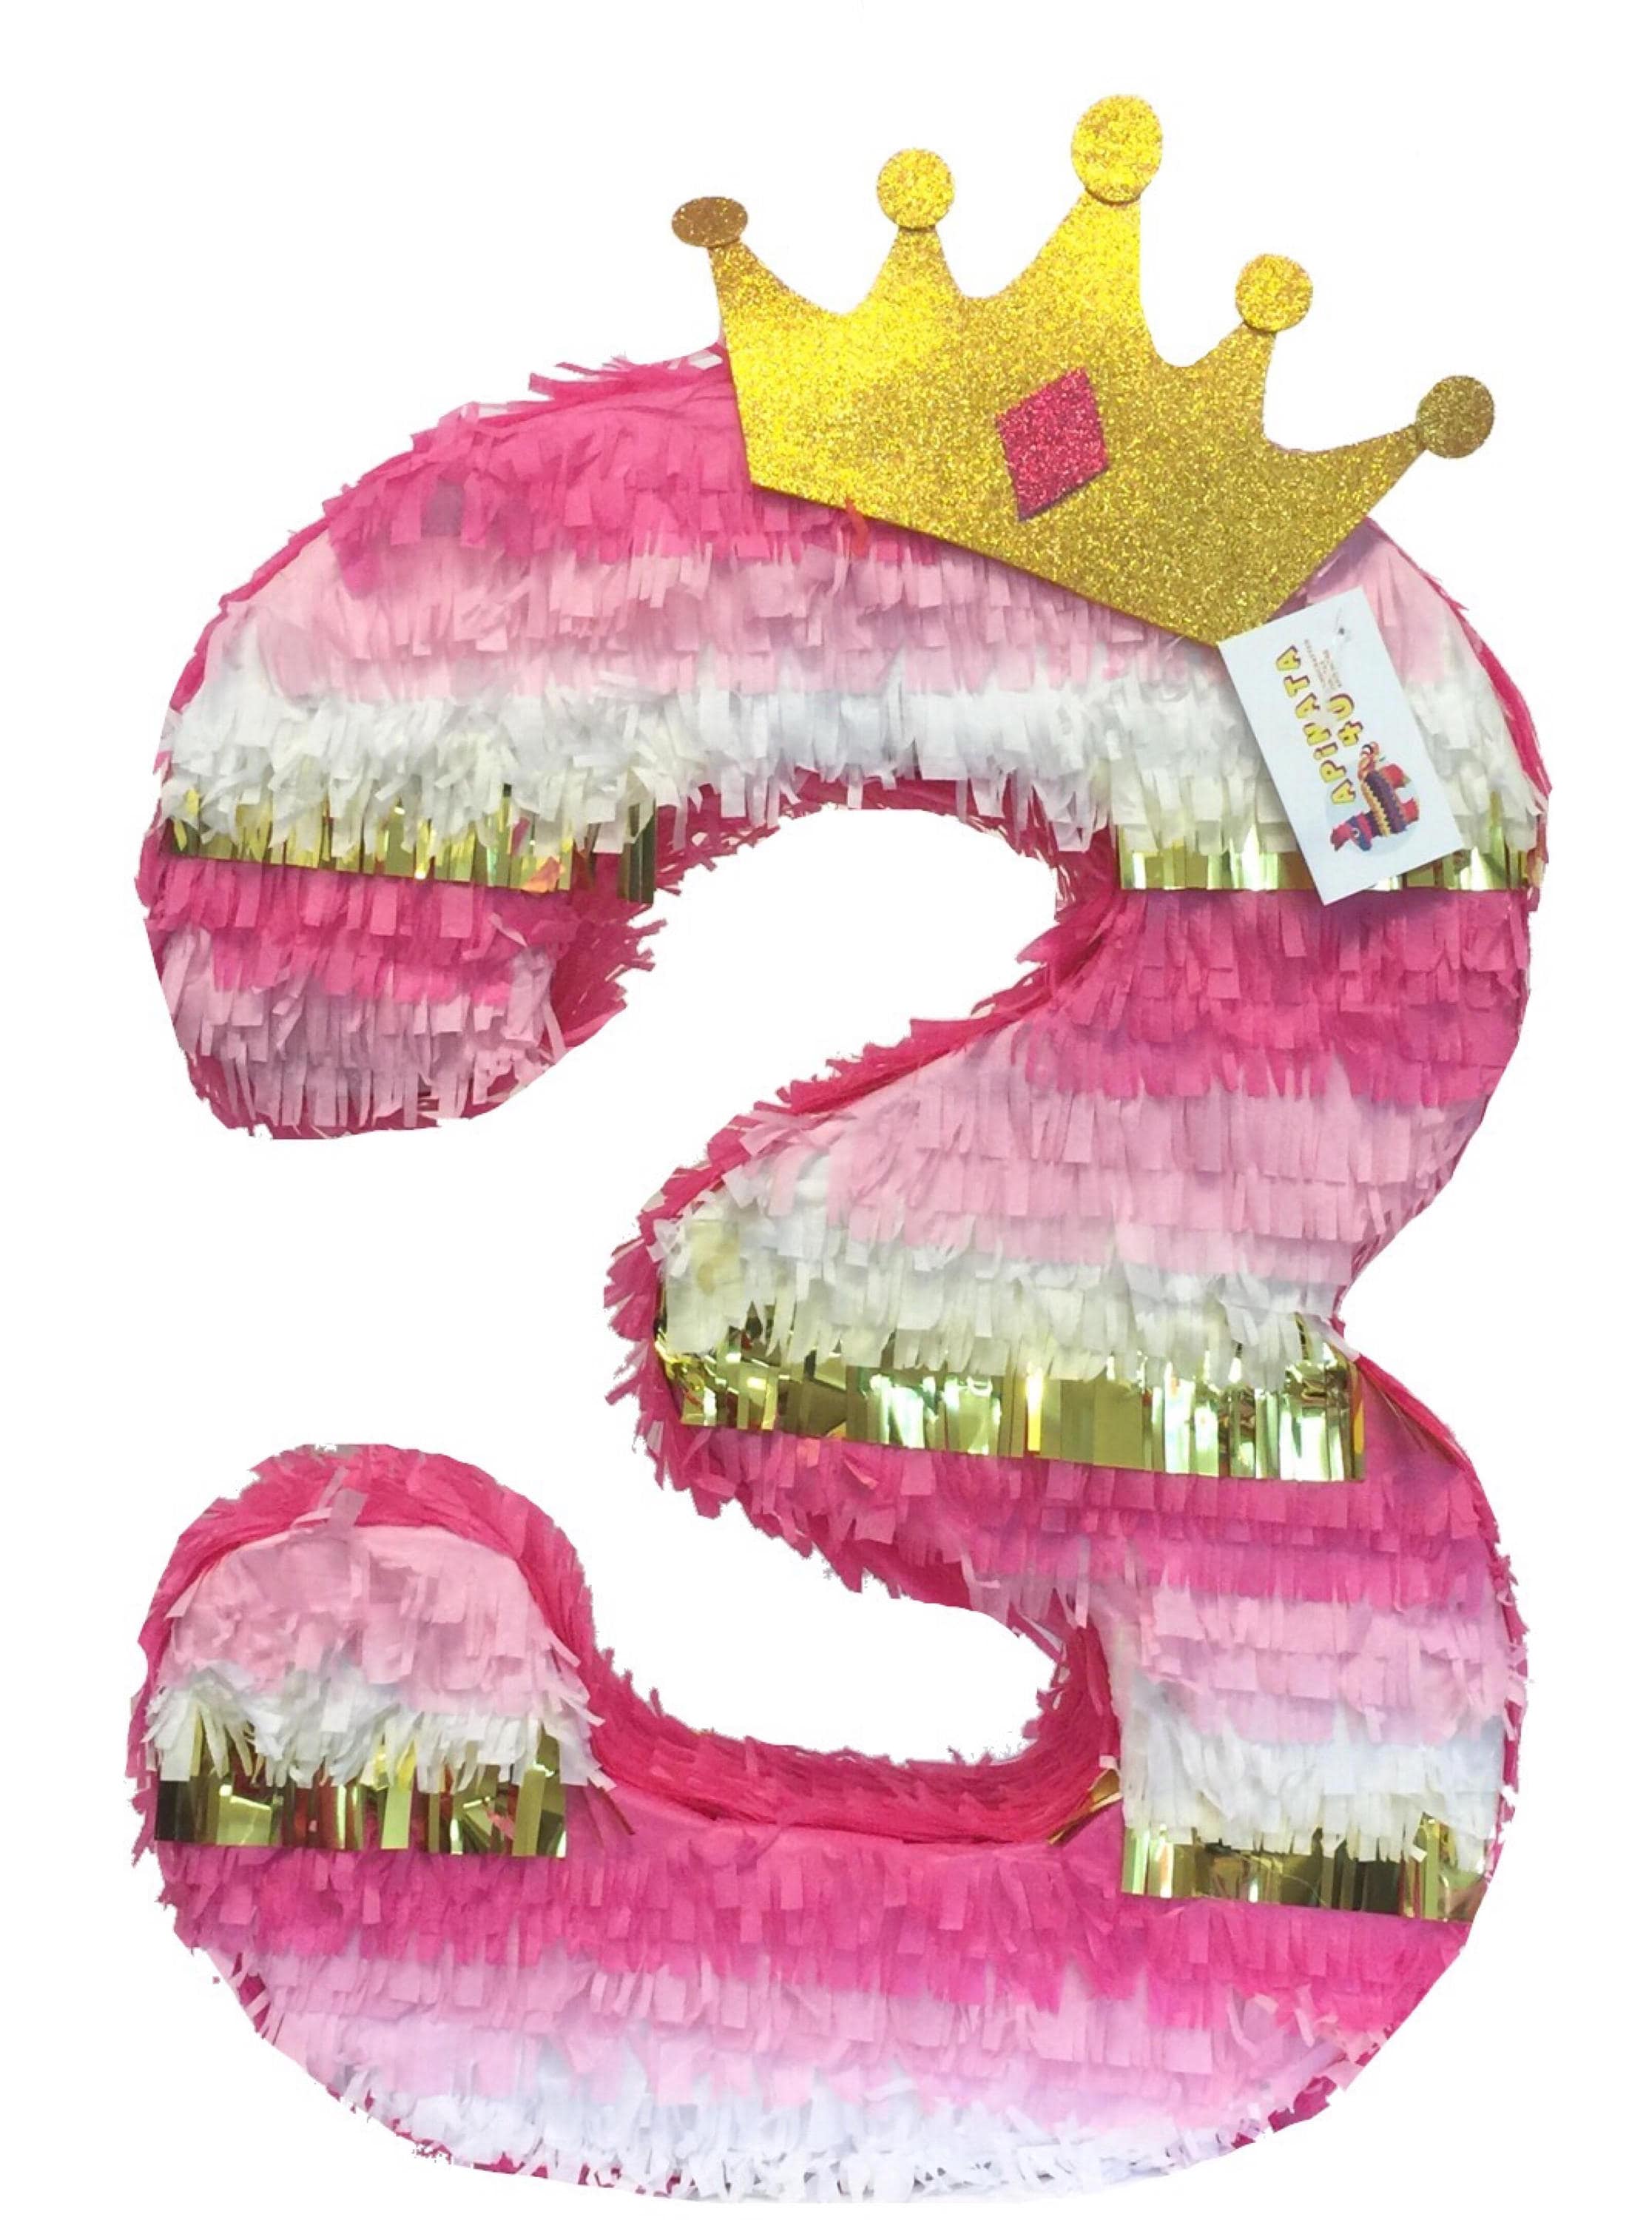 Linda piñata de carroza de princesas para adornar tu cumpleaños